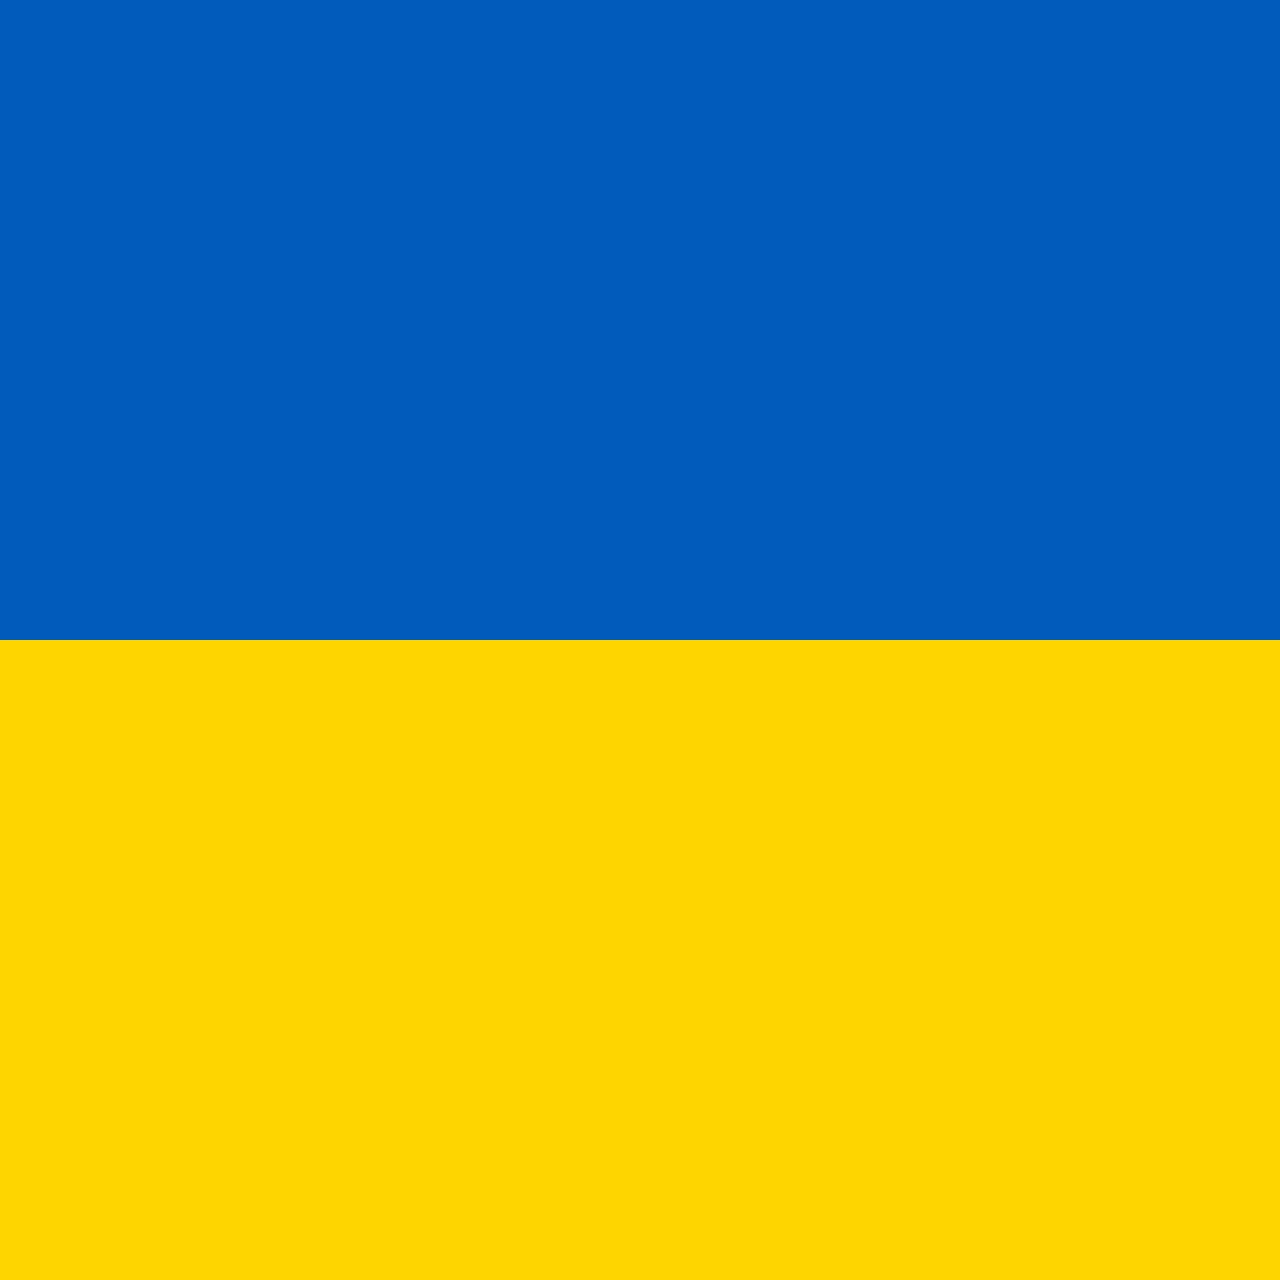 Hëllef fir d'Leit aus der Ukrain / Soutien pour l'Ukraine